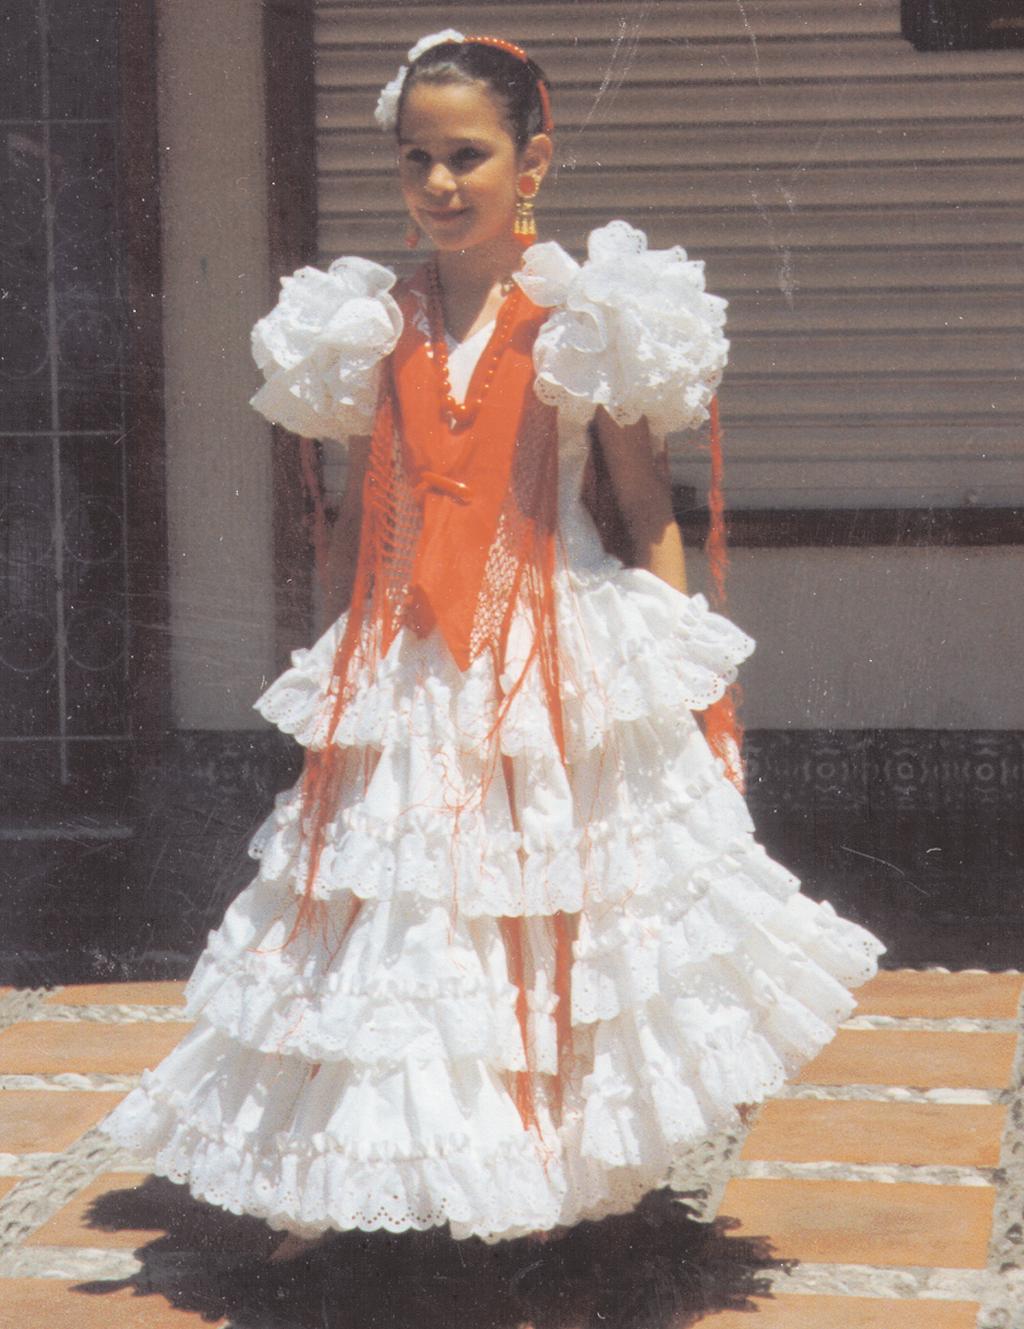 Traditions Visual 2: Spanish Flamenco